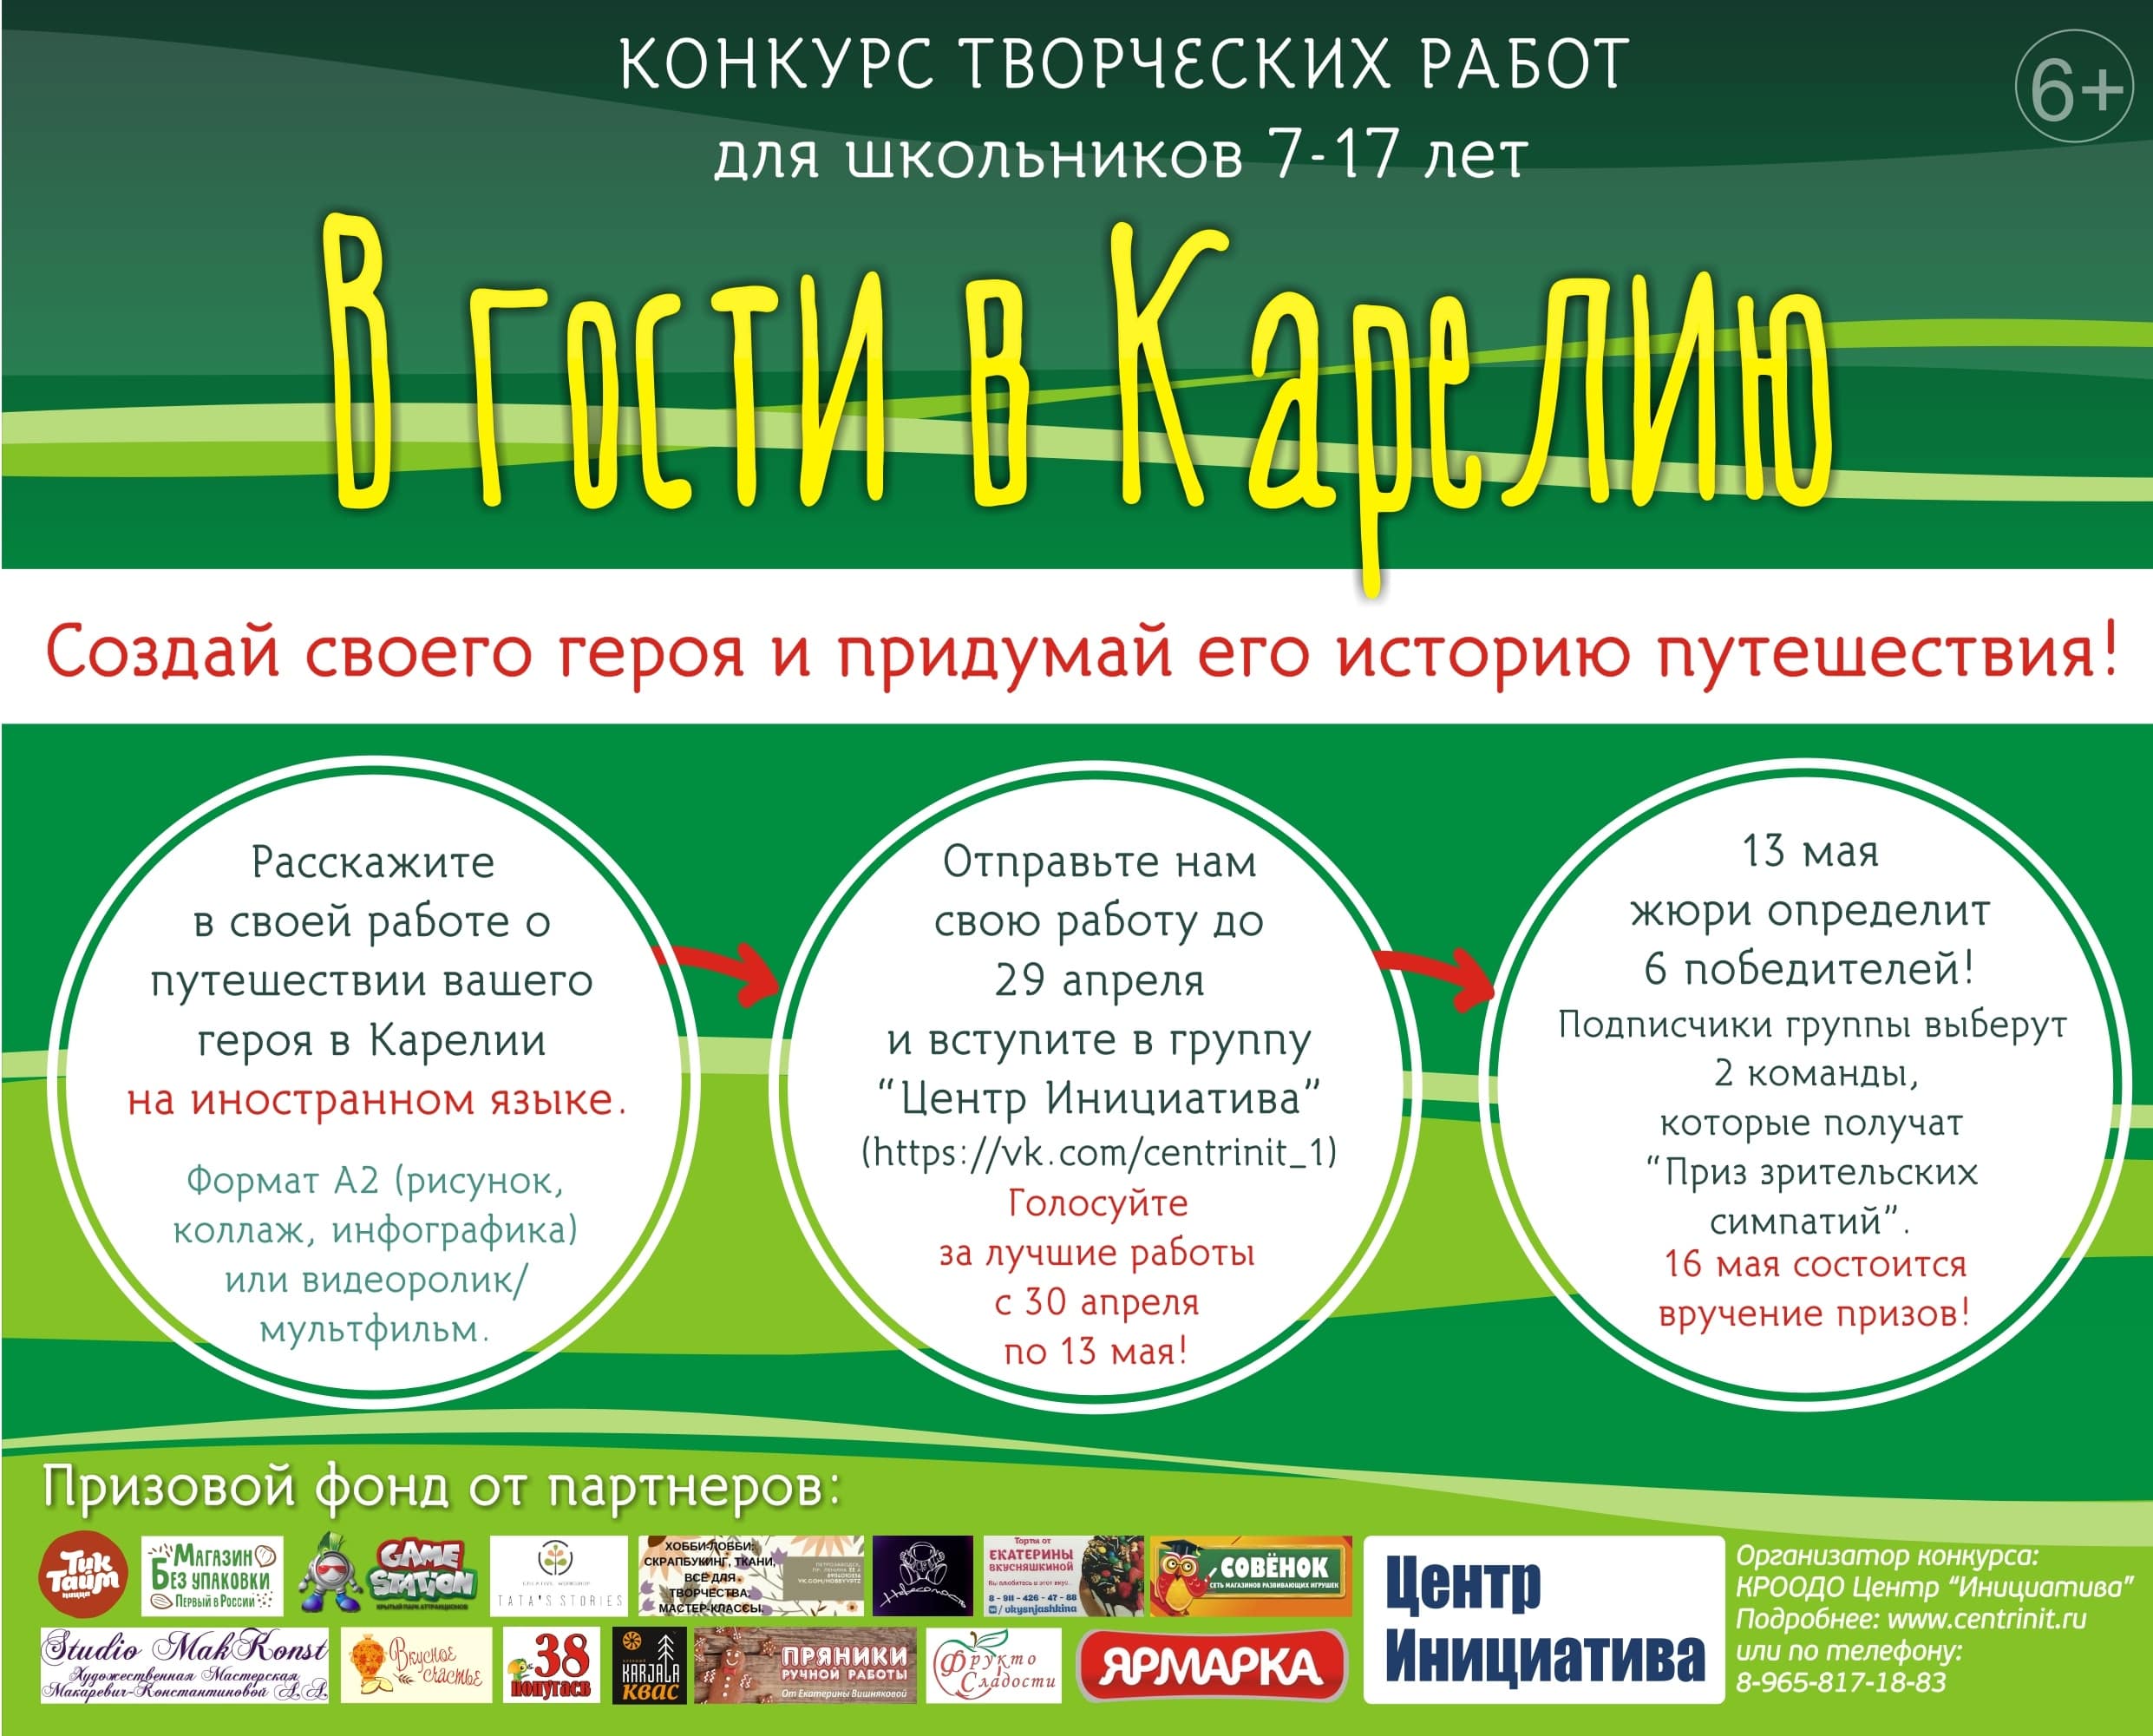 Конкурс «В гости в Карелию» для школьников 7-17 лет Республики Карелия